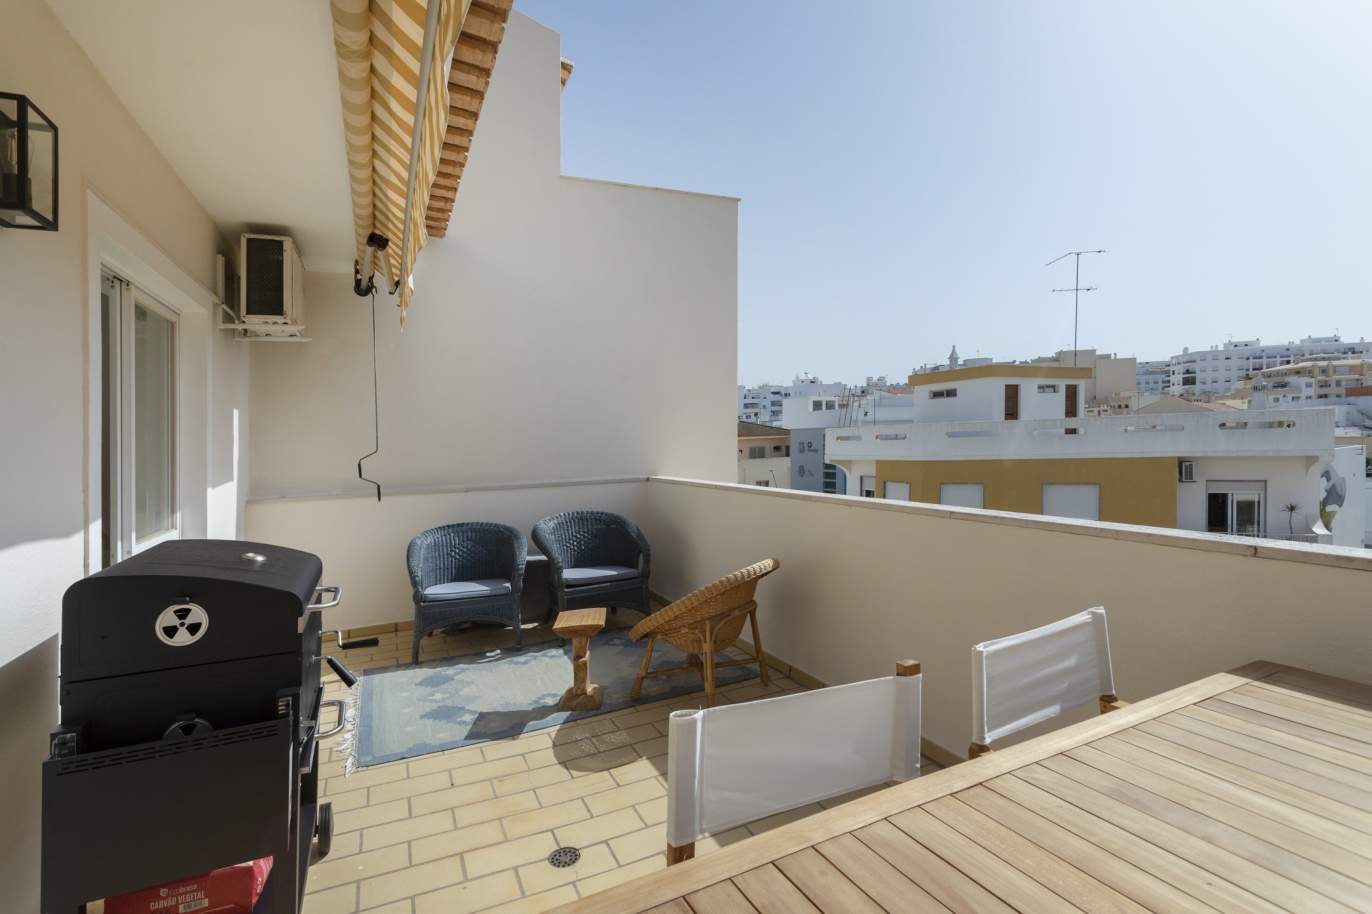 Piso de 1 dormitorio en venta en Quarteira centro, Algarve_204561